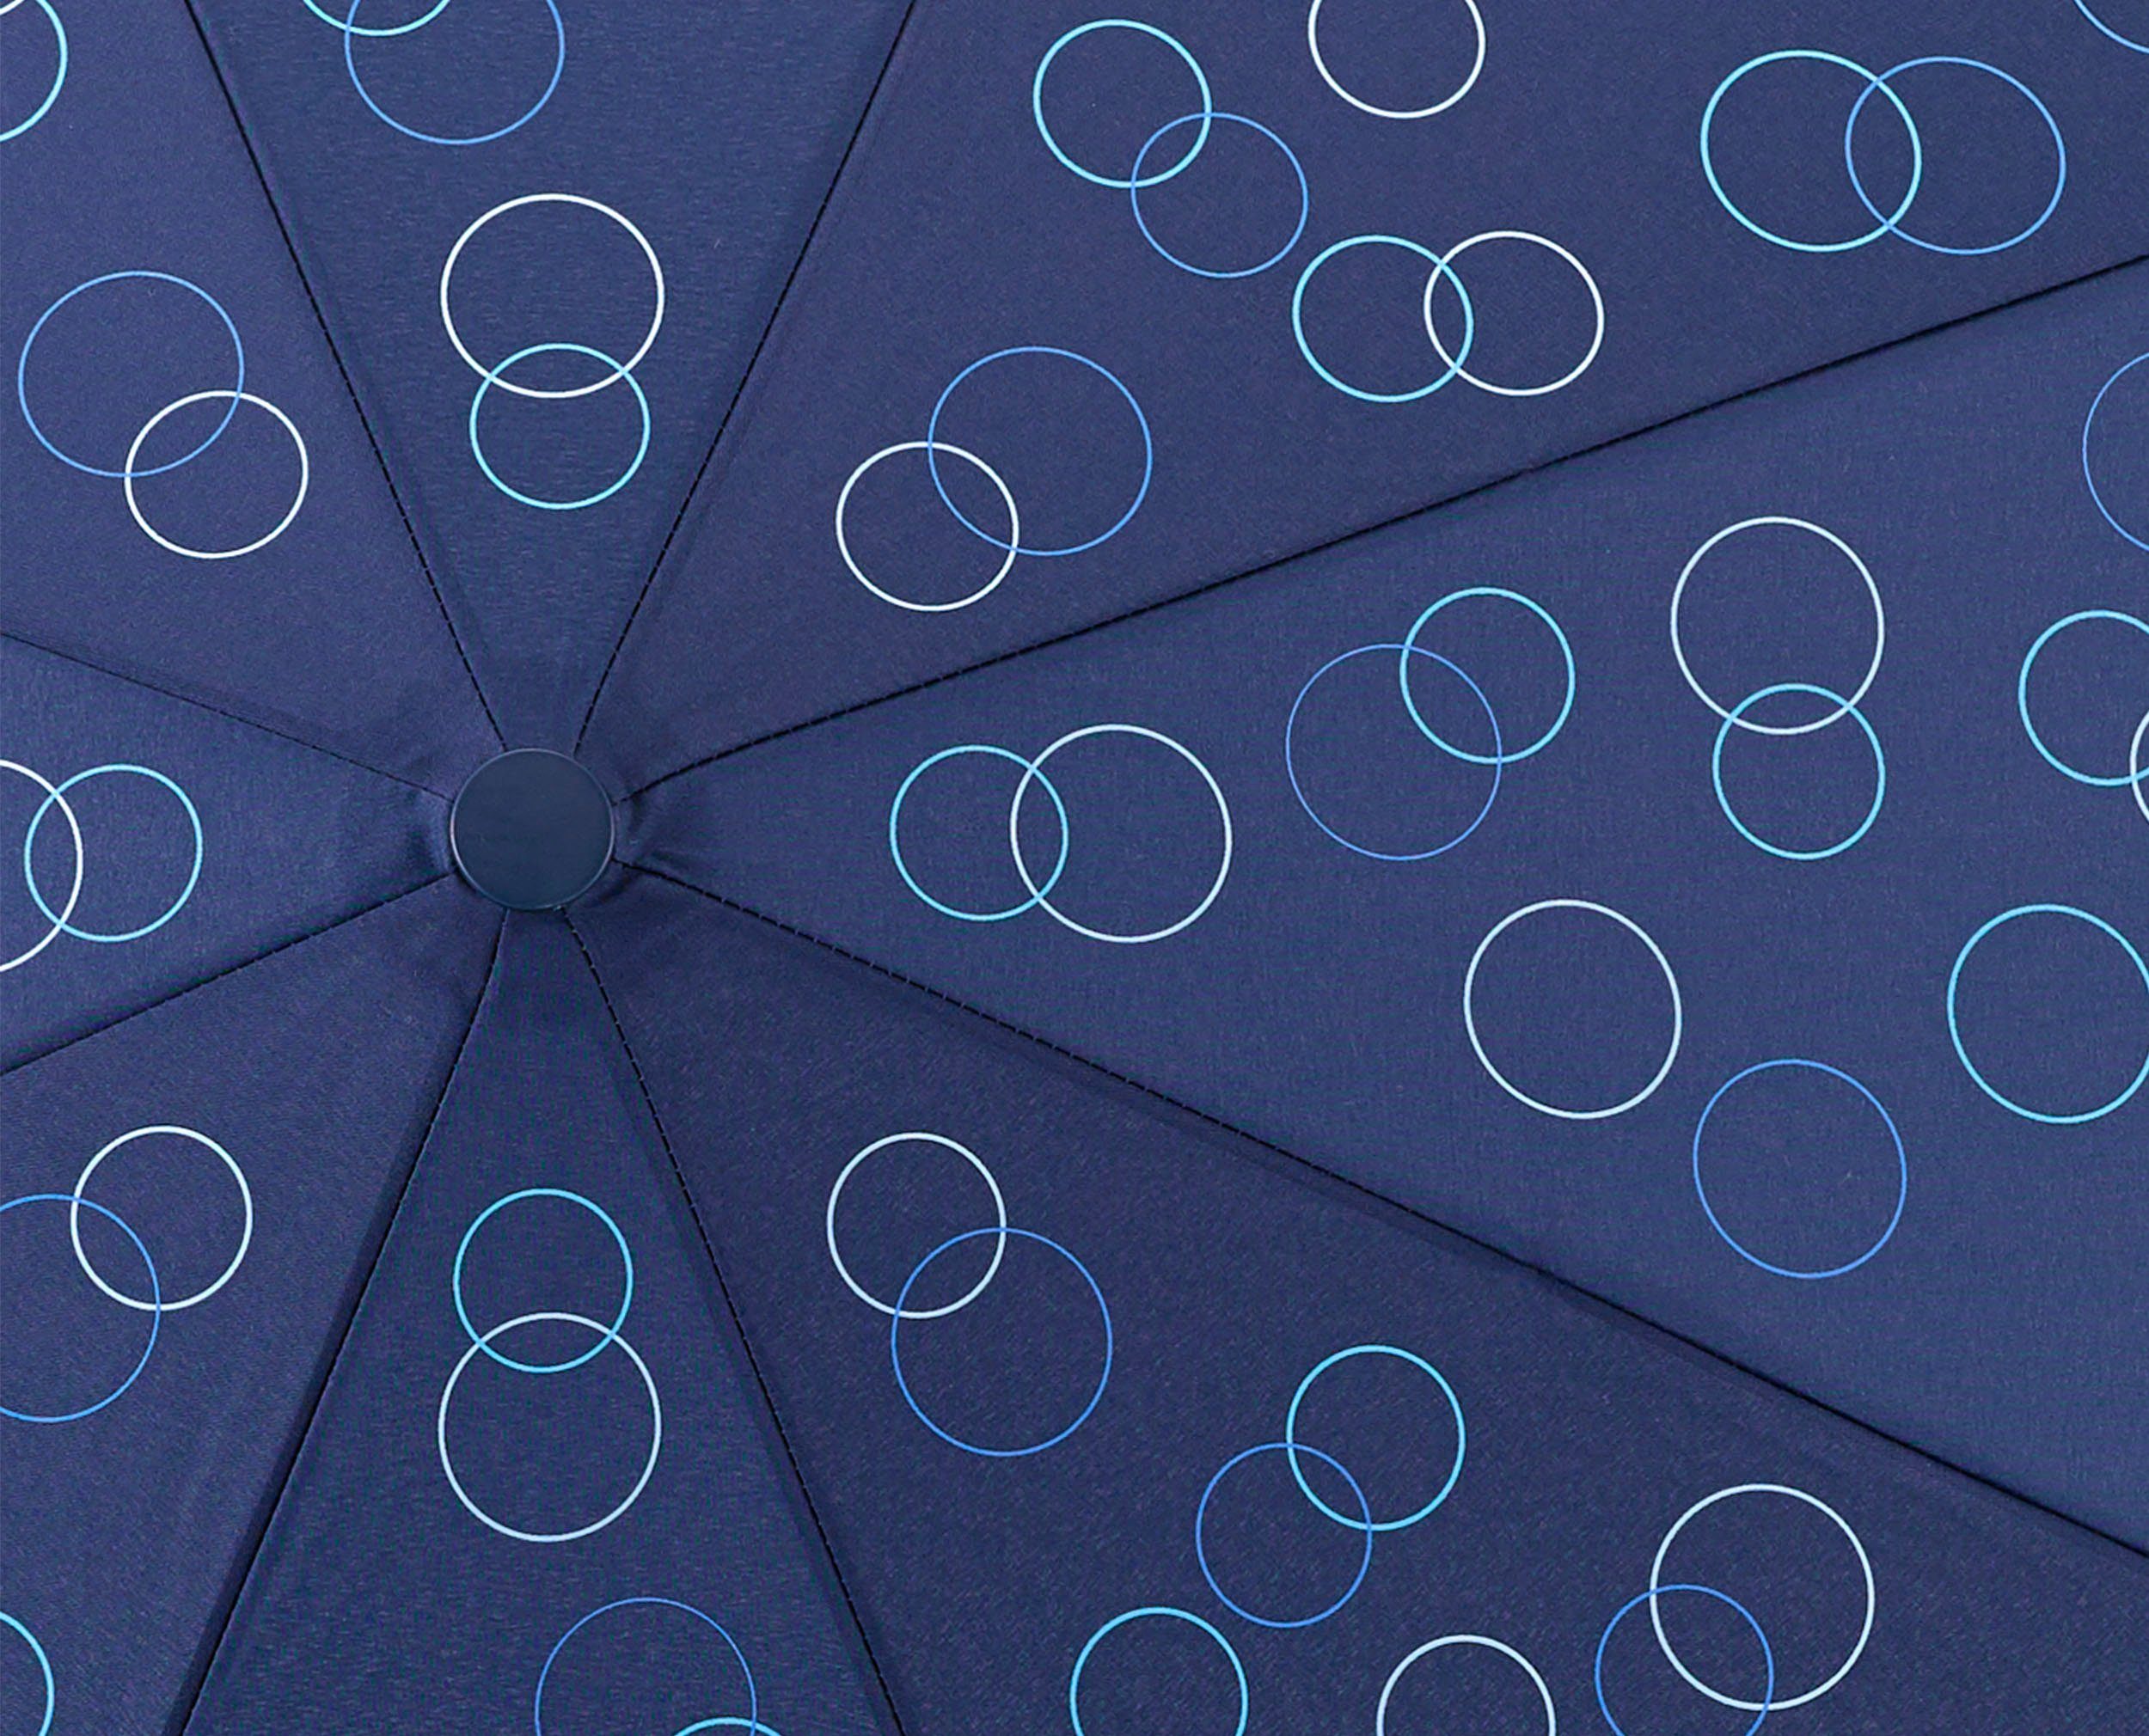 blau Umwelt-Taschenschirm, marine, EuroSCHIRM® Taschenregenschirm Kreise